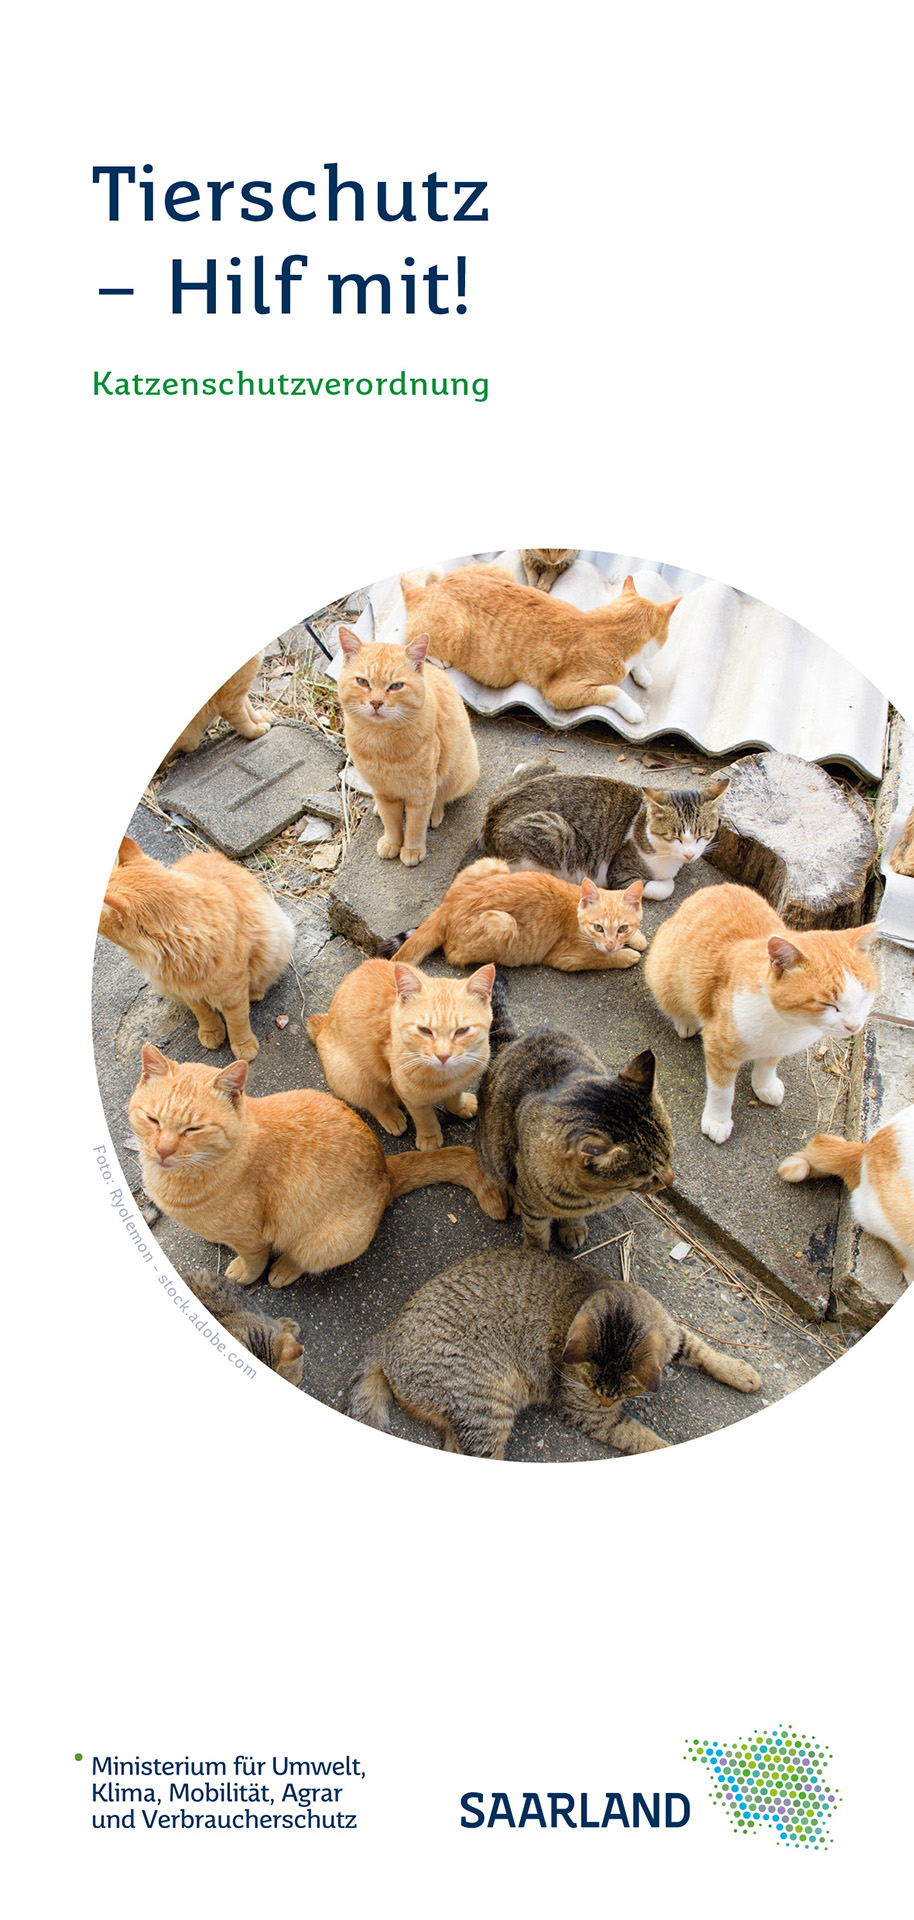 Im Bild sieht man die Titelseite des Informationsflyers zur Katzenschutzverordnung